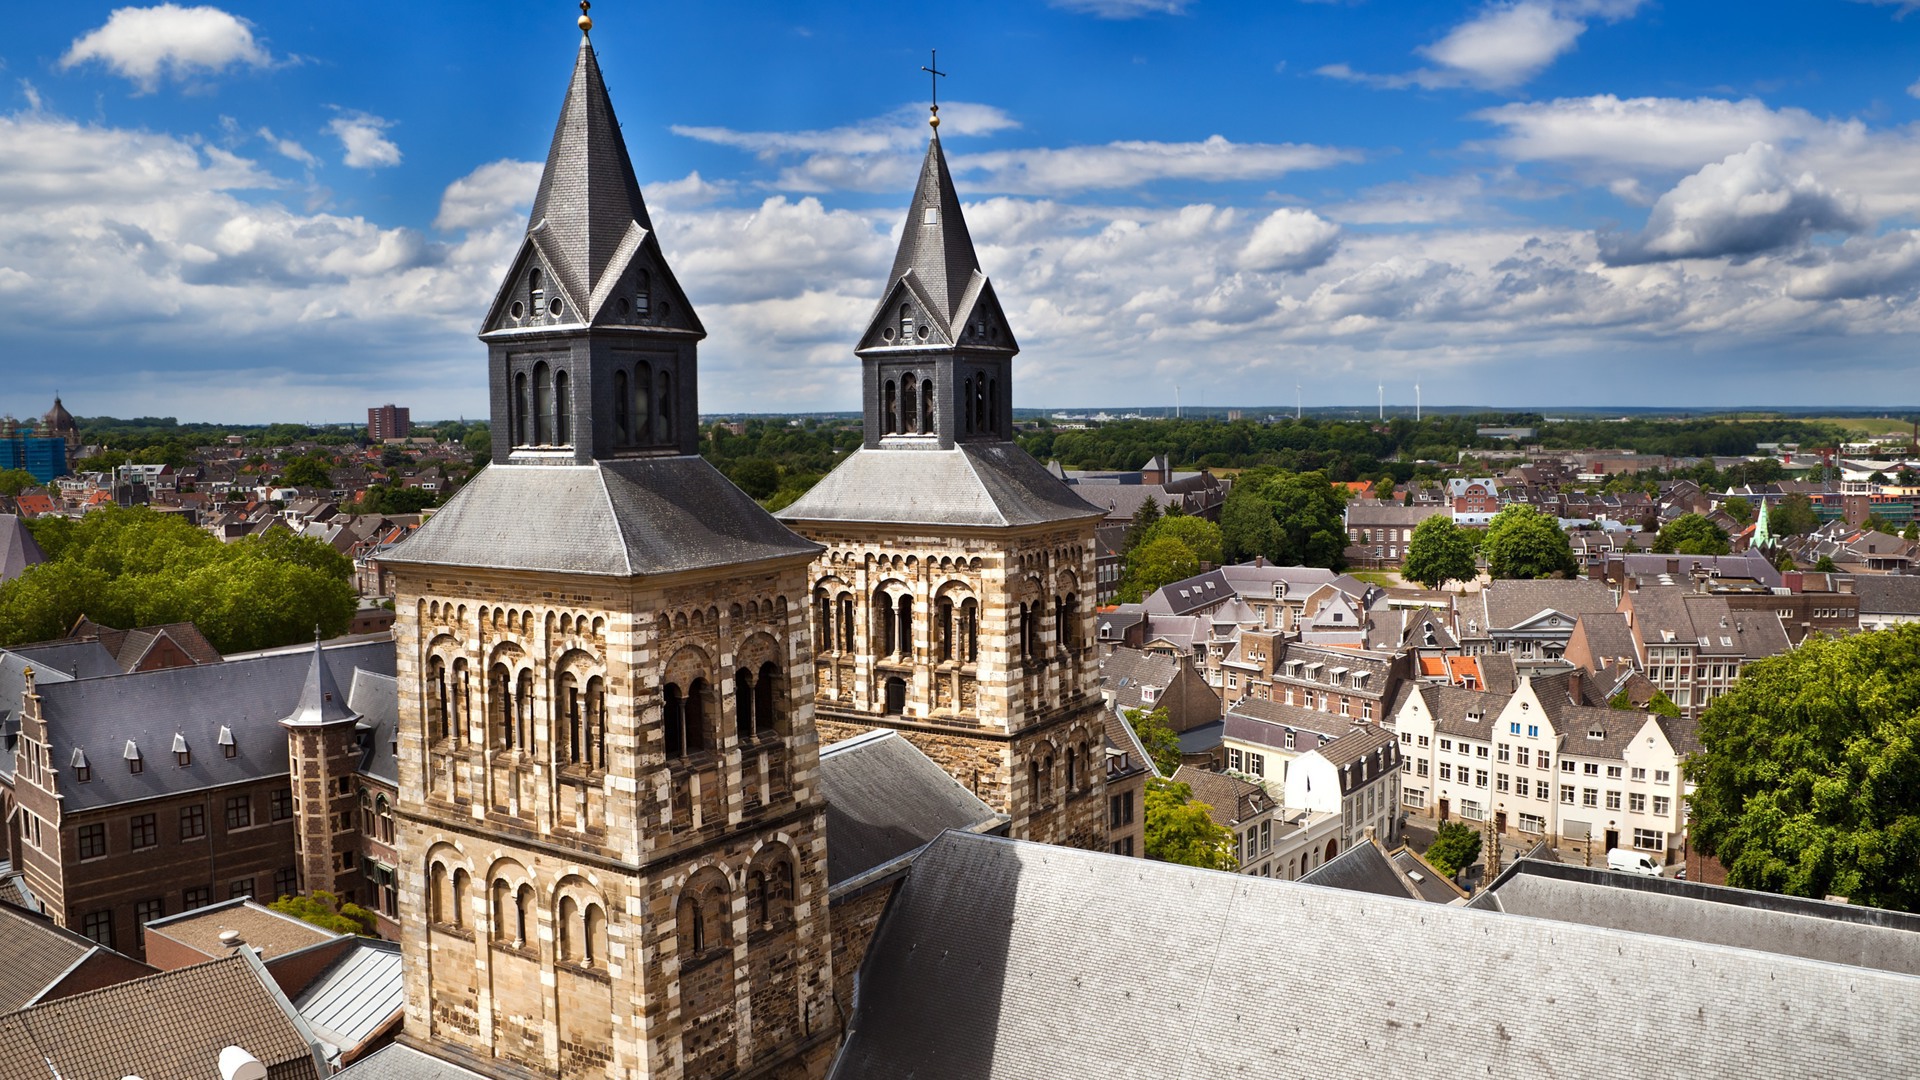 Découvrez la riche histoire de Maastricht pendant vos vacances dans le Limbourg méridional